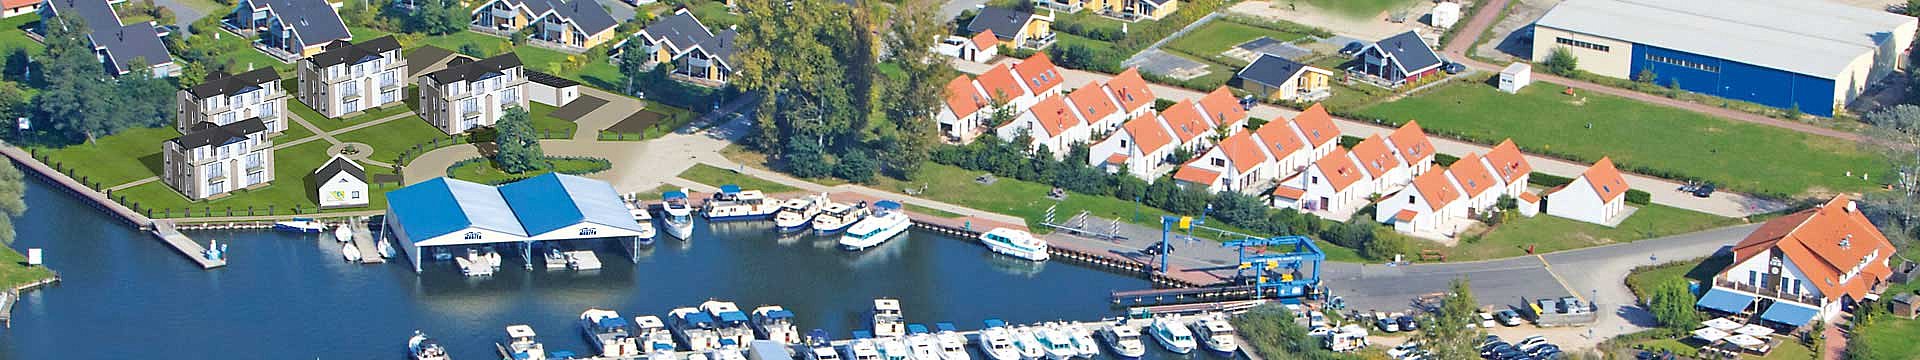 Luftbild mit der Visualisierung der Marina Müritz Apartments - Wohnung kaufen Müritz